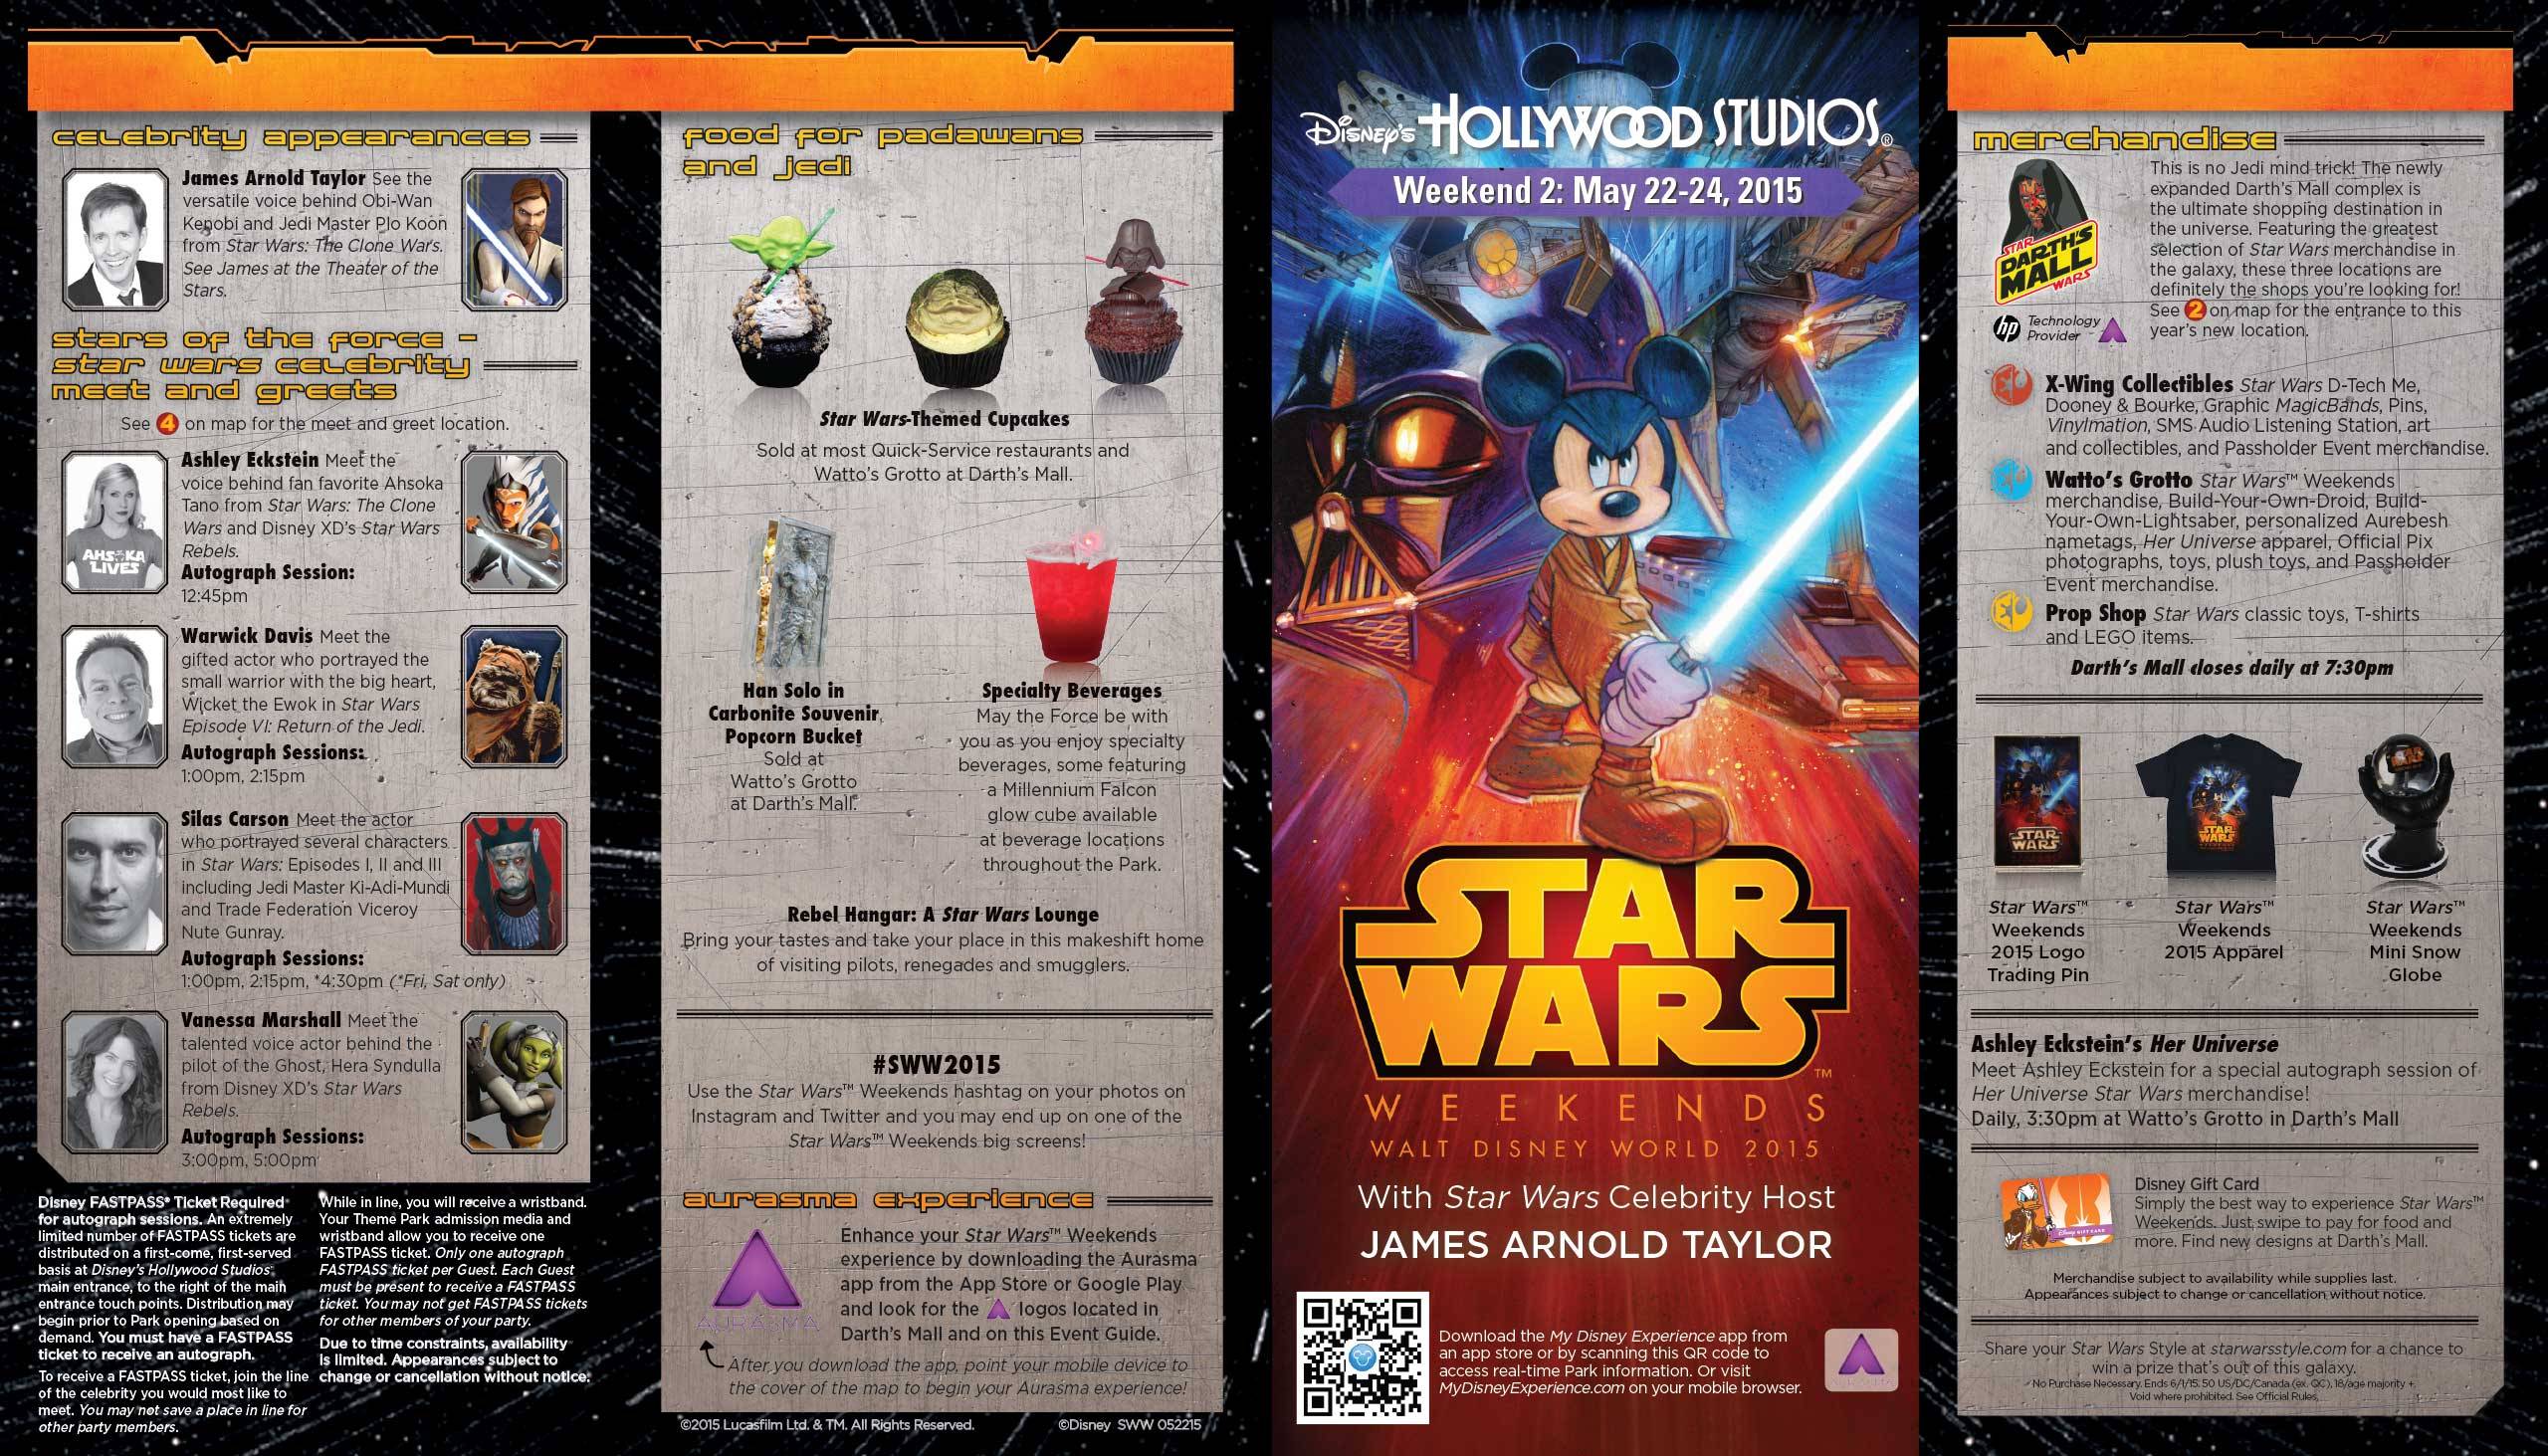 PHOTOS - Star Wars Weekends 2015 Weekend 2 guide map